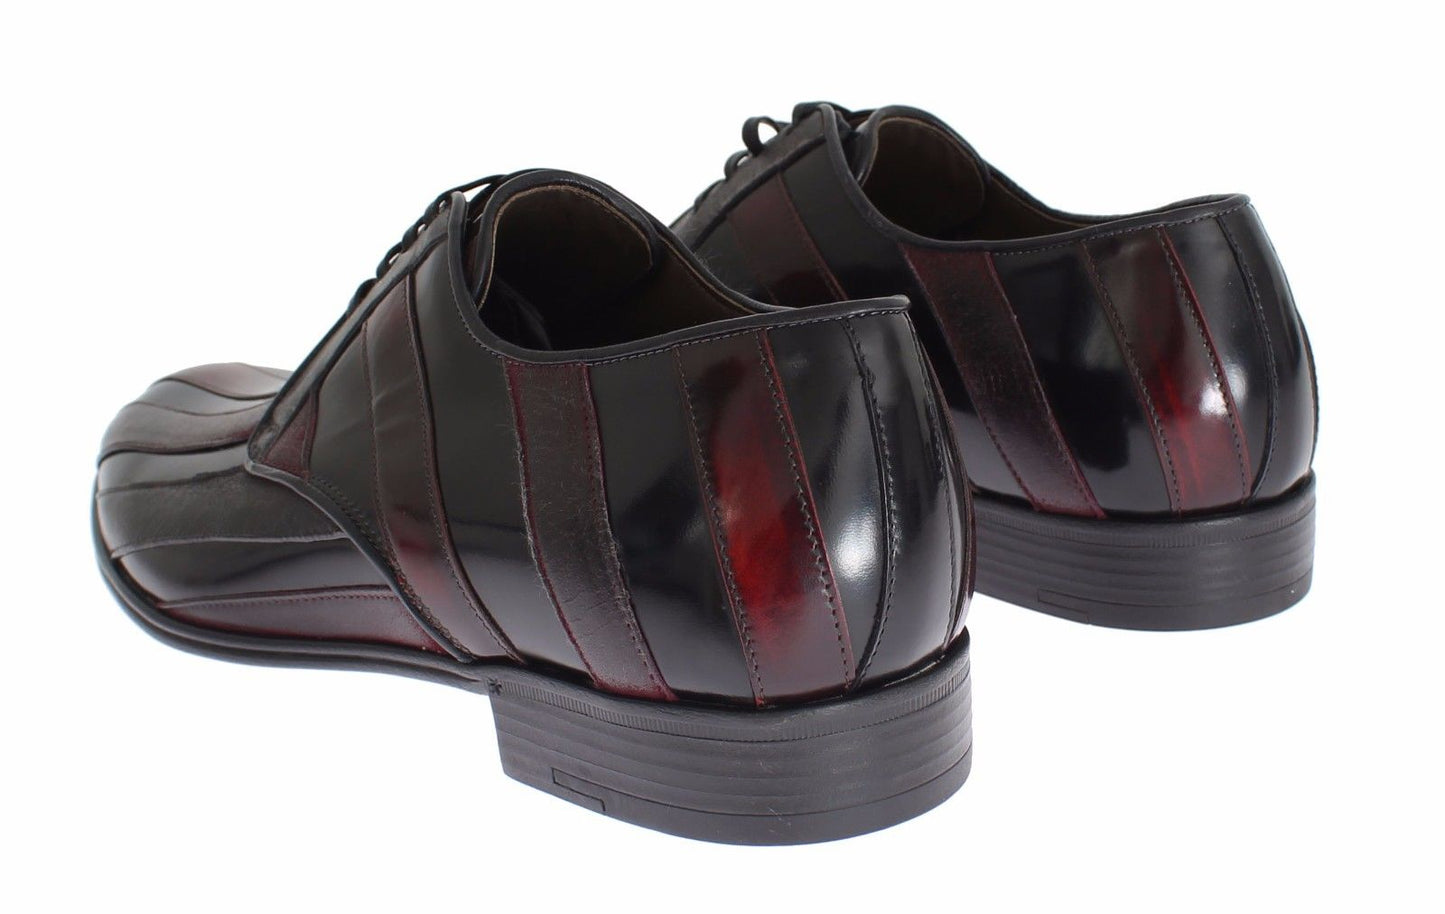 Elegant Black Bordeaux Striped Leather Dress Shoes